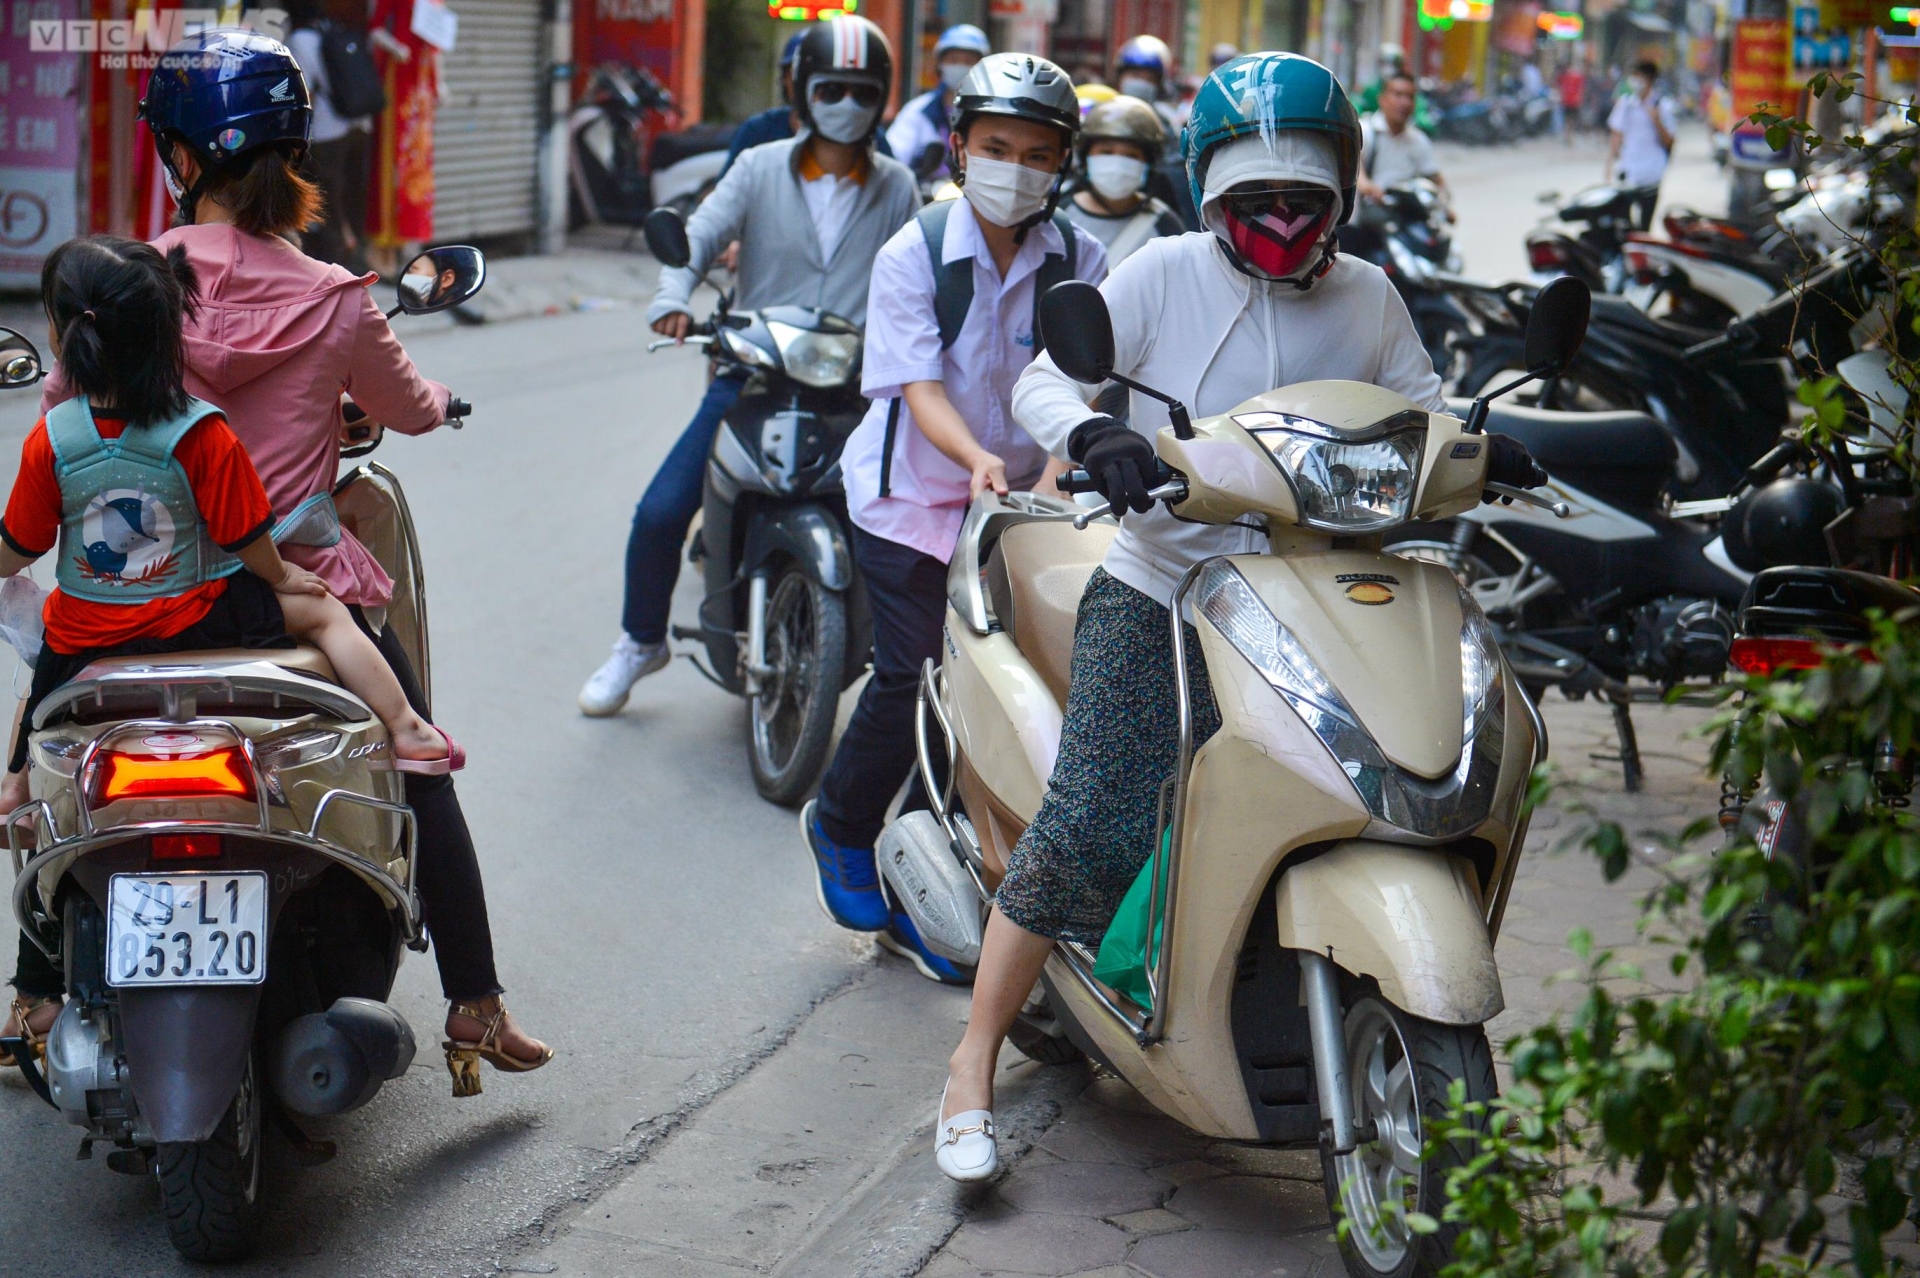 Rào tôn chắn gần hết lòng đường ở Hà Nội, dân khổ sở luồn lách đi qua - Ảnh 3.